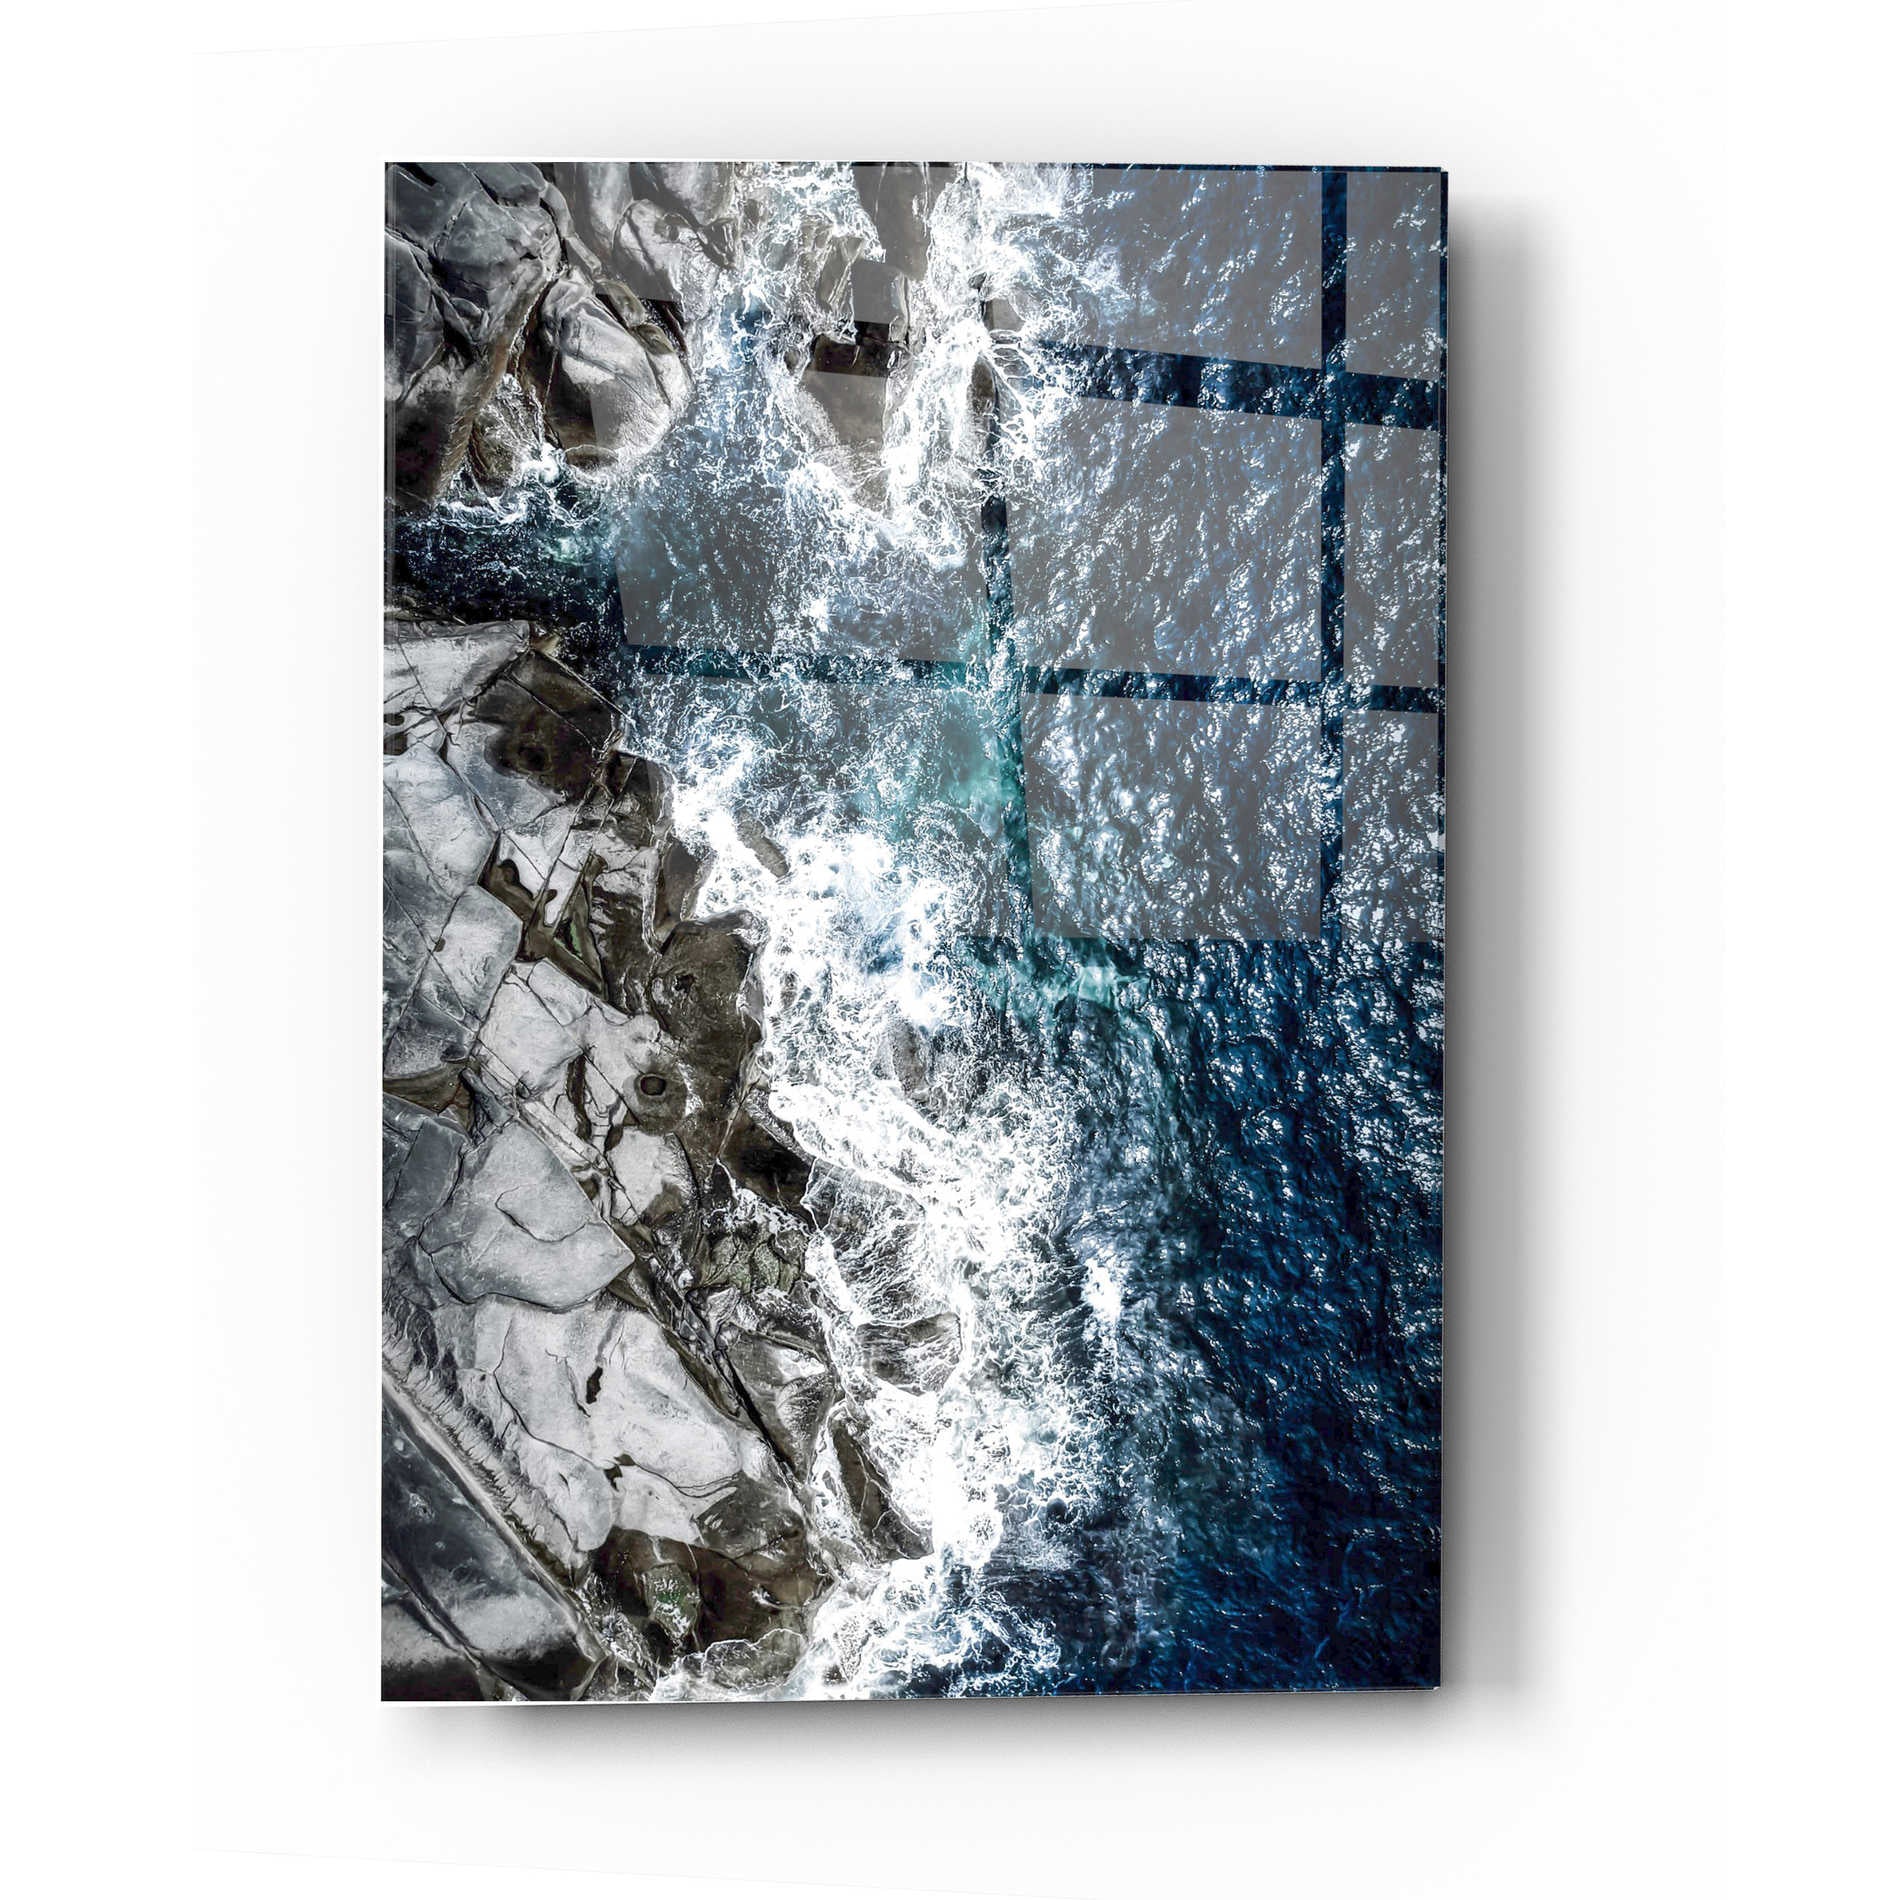 Epic Art 'Skagerrak Coastline' by Nicklas Gustafsson, Acrylic Glass Wall Art,16x24